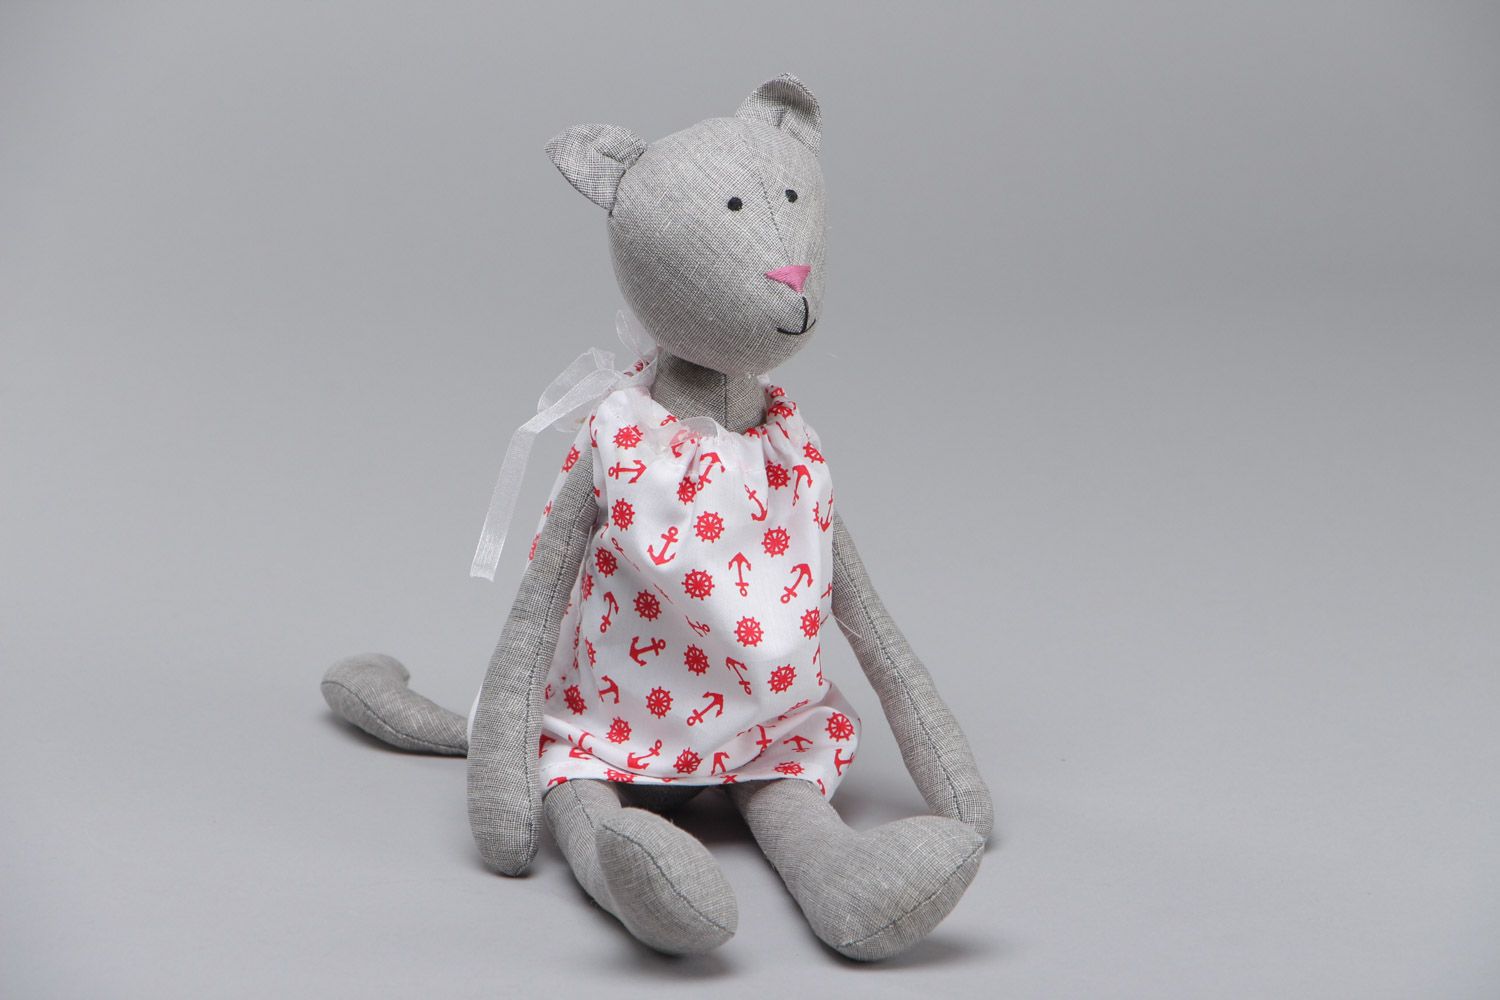 Мягкая текстильная игрушка кошечка в платье пошитая вручную из льна и хлопка фото 2